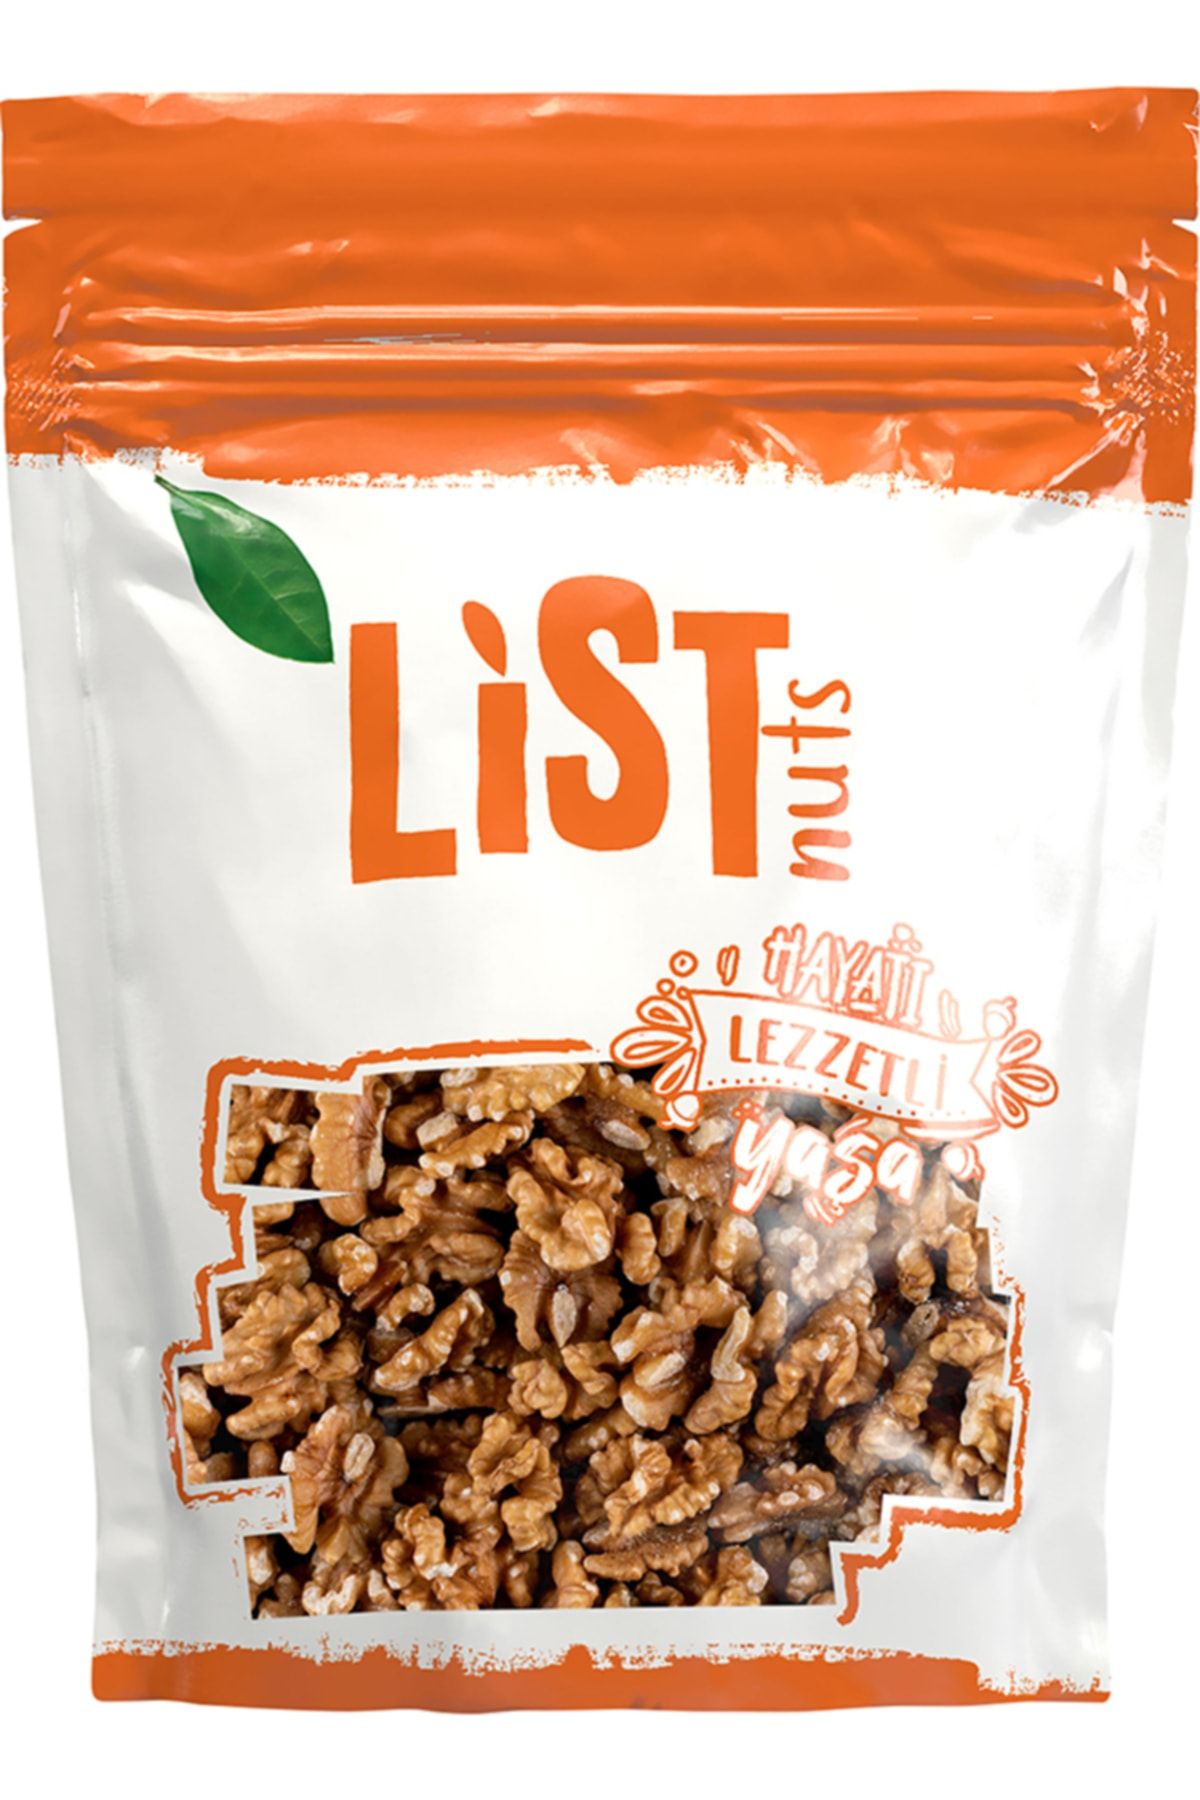 List Nuts Ceviz İçi 1 kg